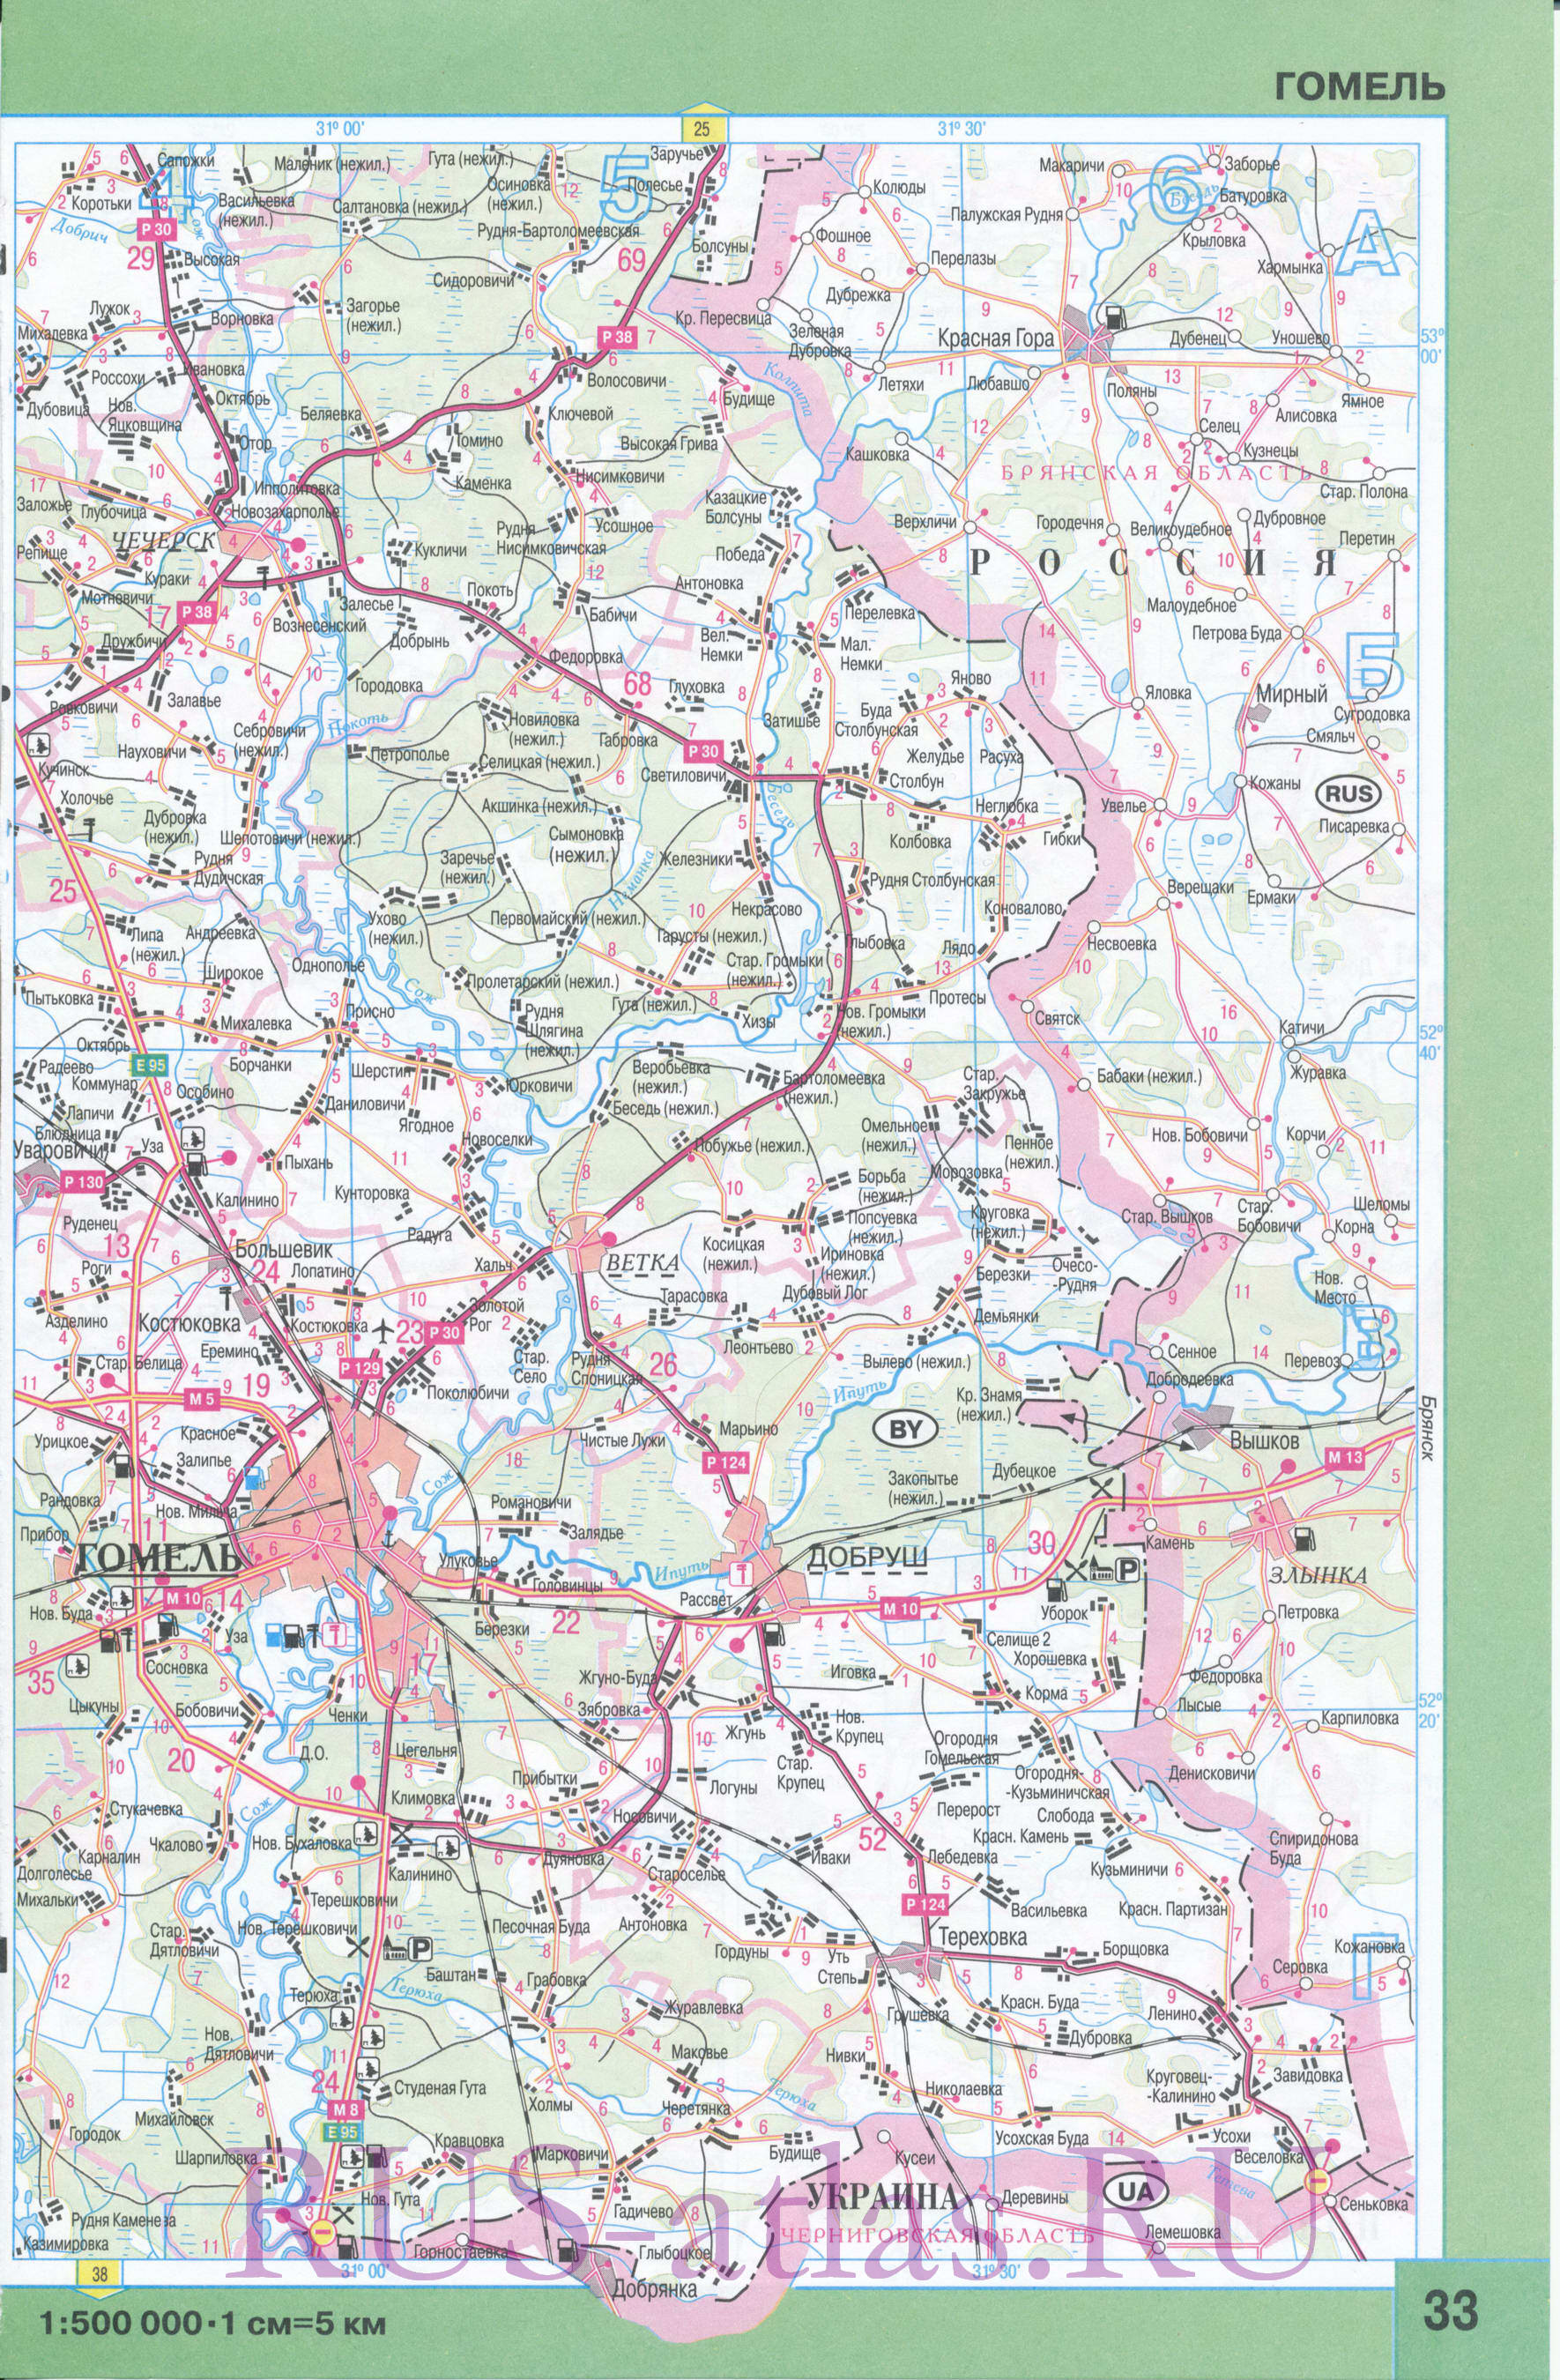 Карта Гомельской области. Карта дорог Гомельской области Беларуси. Площадь Гомельской обл 40400 кв.км, население 1464500 человек, C0 - 